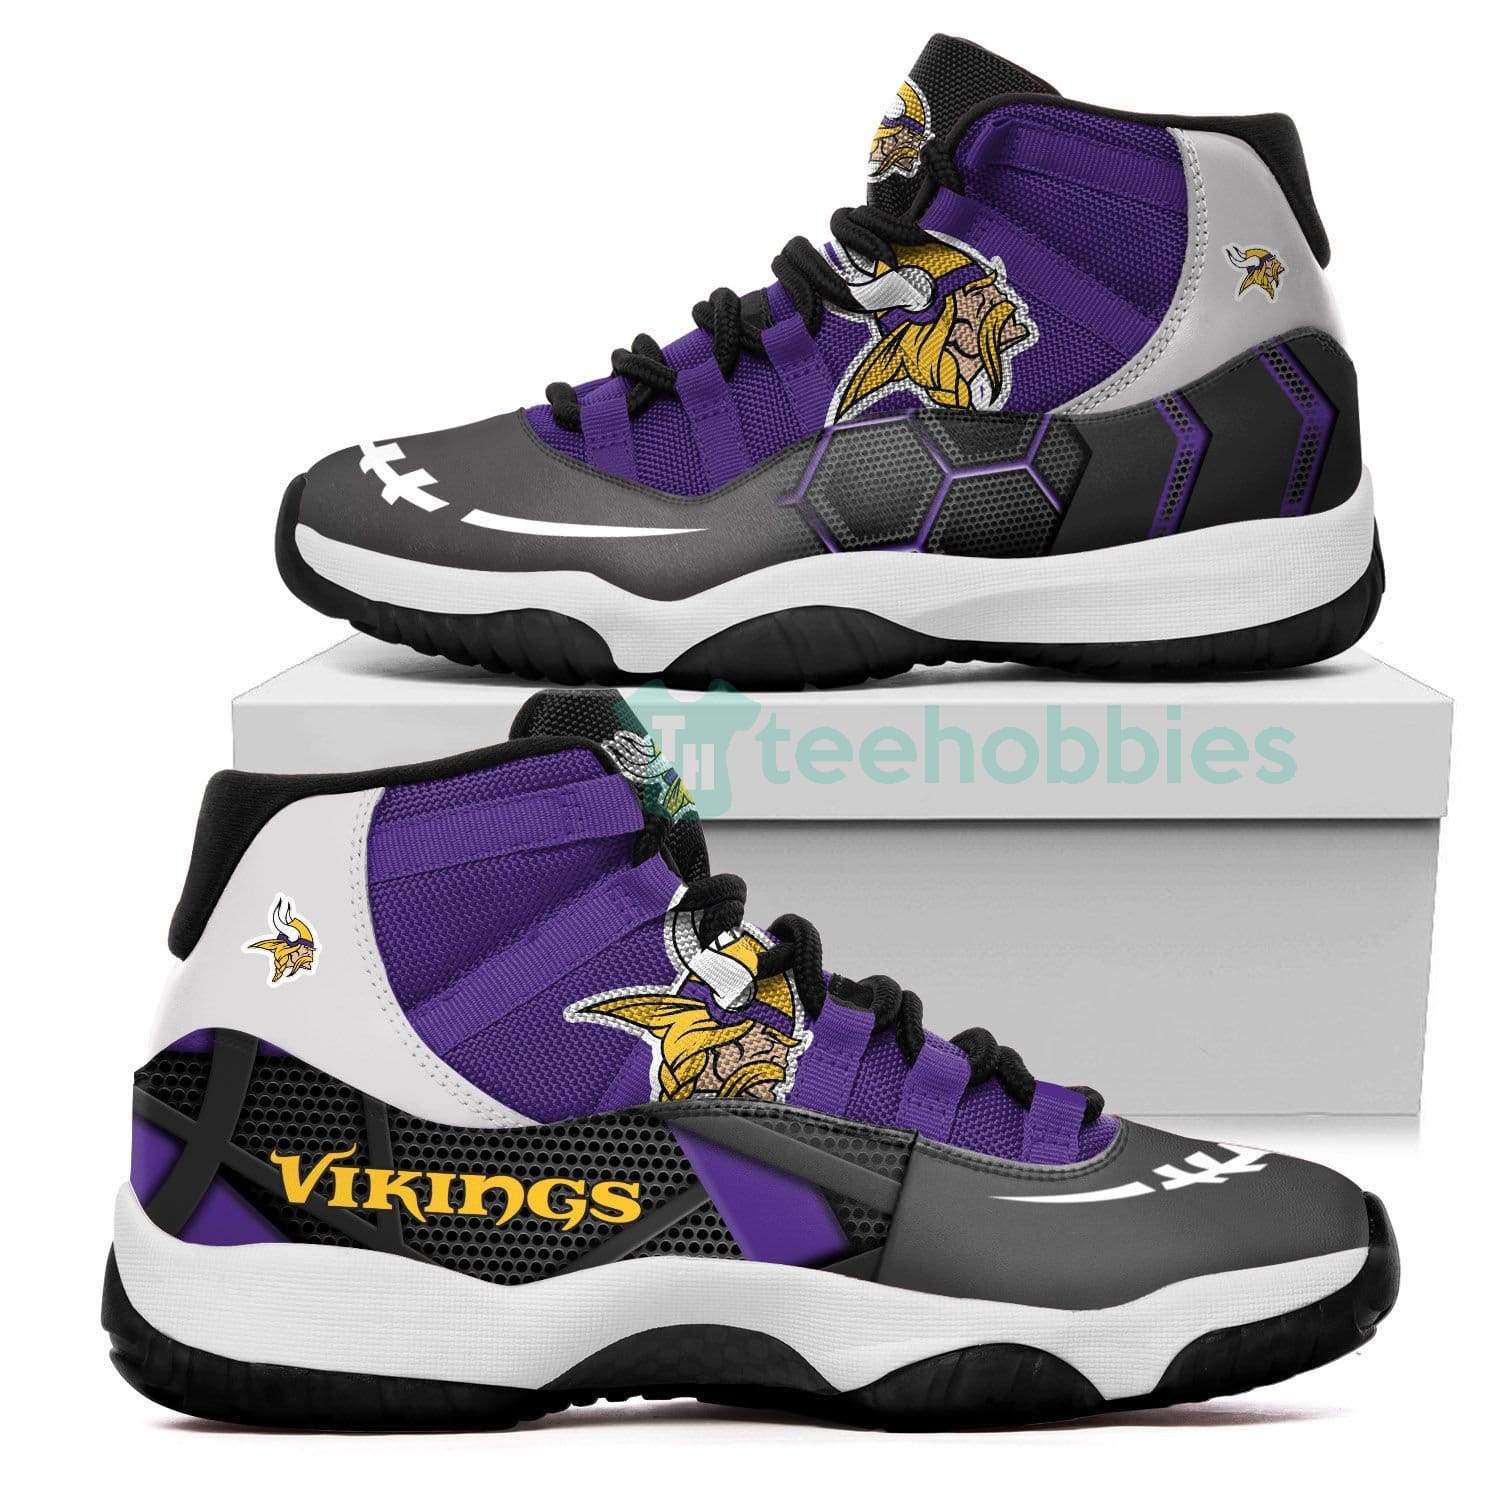 Minnesota Vikings New Air Jordan 11 Shoes